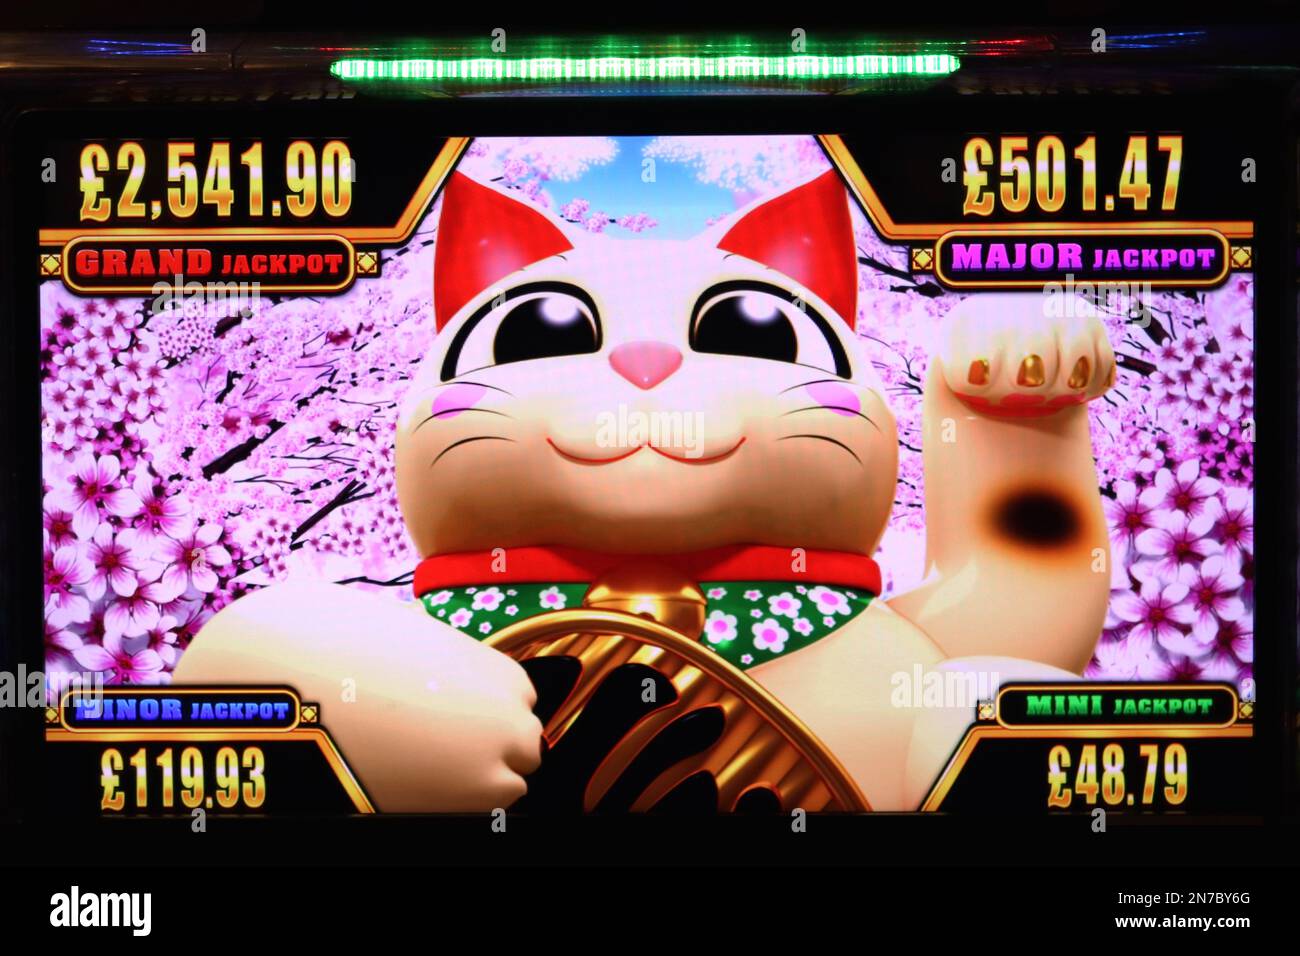 Grafica colorata a tema dello schermo di una slot machine che visualizza quattro possibili scenari di jackpot. Foto Stock